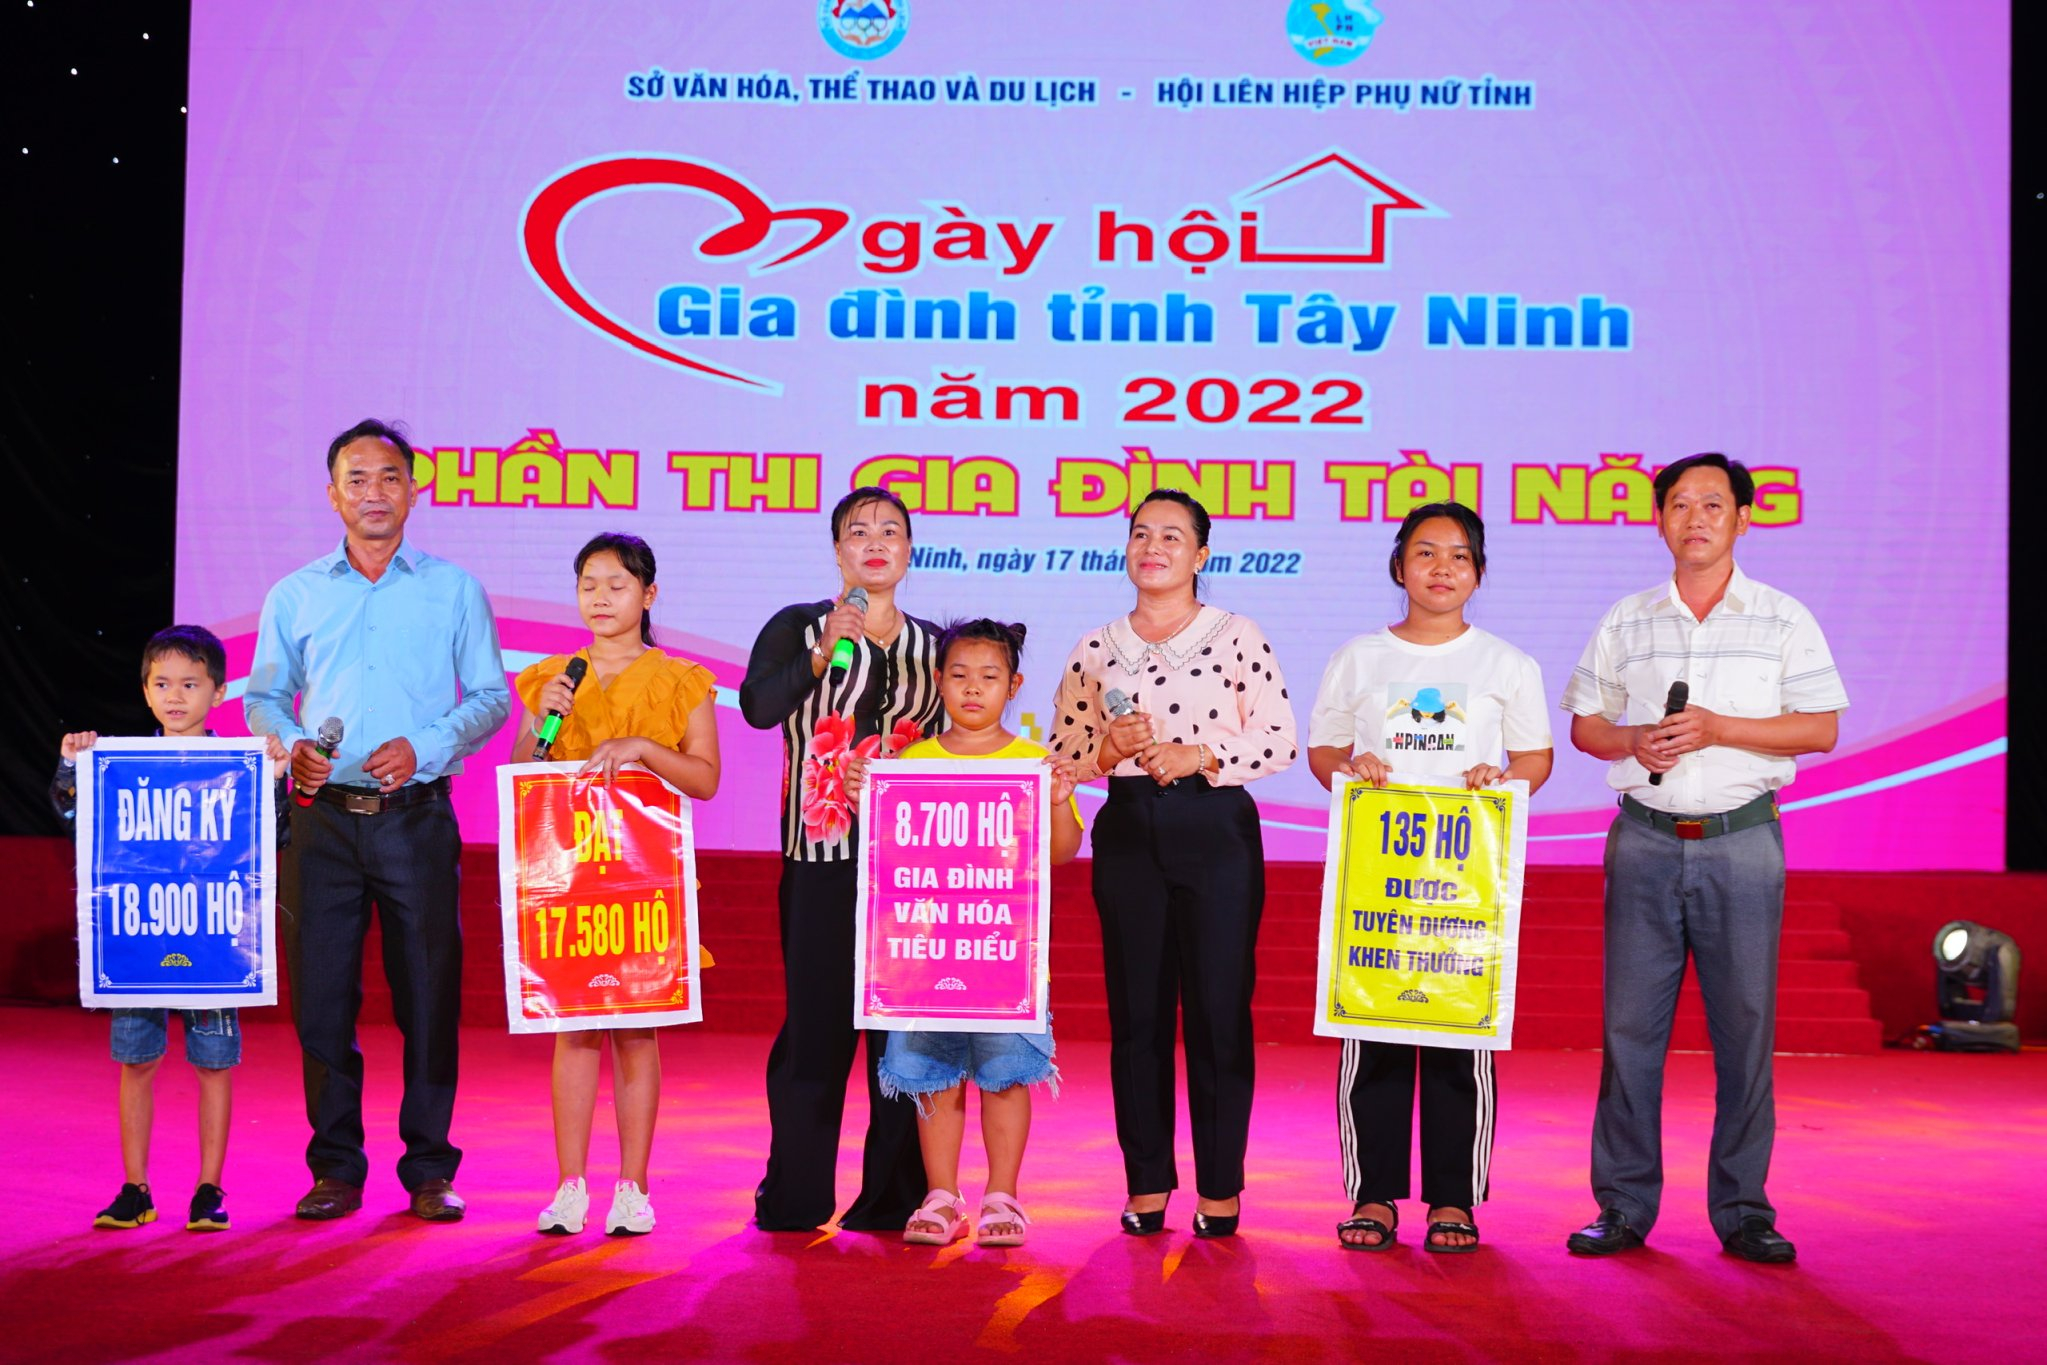 Ngày hội gia đình tỉnh Tây Ninh năm 2022 do Sở VHTT&amp;amp;DL tổ chức.